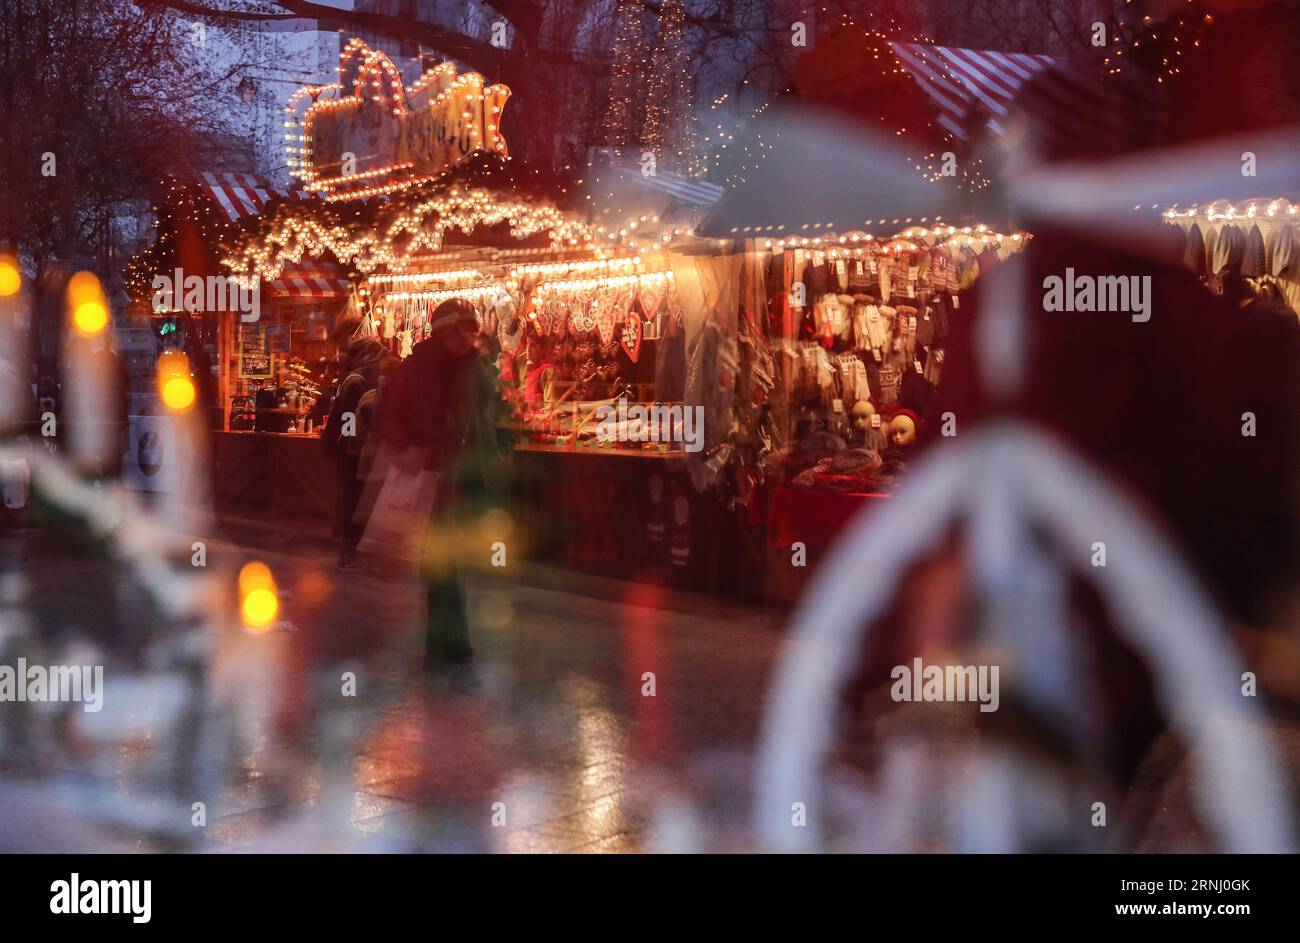 Anschlag in Berlin - Wiedereröffnung Weihnachtsmarkt am Breitscheidplatz (161222) -- BERLIN, 22. Dezember 2016 -- Menschen spazieren auf dem wiedereröffneten Weihnachtsmarkt am Breitscheid-Platz in Berlin, Hauptstadt Deutschlands, am 22. Dezember 2016. Der Weihnachtsmarkt hier wurde am Montag angegriffen und am Donnerstag wieder eröffnet. ) (gl) DEUTSCHLAND-BERLIN-ANGEGRIFFEN WEIHNACHTSMARKT-WIEDERERÖFFNUNG ShanxYuqi PUBLICATIONxNOTxINxCHN Halt in Berlin Wiedereröffnung Weihnachtsmarkt bei Verwaltungen Berlin DEC 22 2016 Prominente spazieren AUF dem wiedereröffneten Weihnachtsmarkt AM Breitscheid-Platz in der Berliner Hauptstadt AM DEC 2 Stockfoto